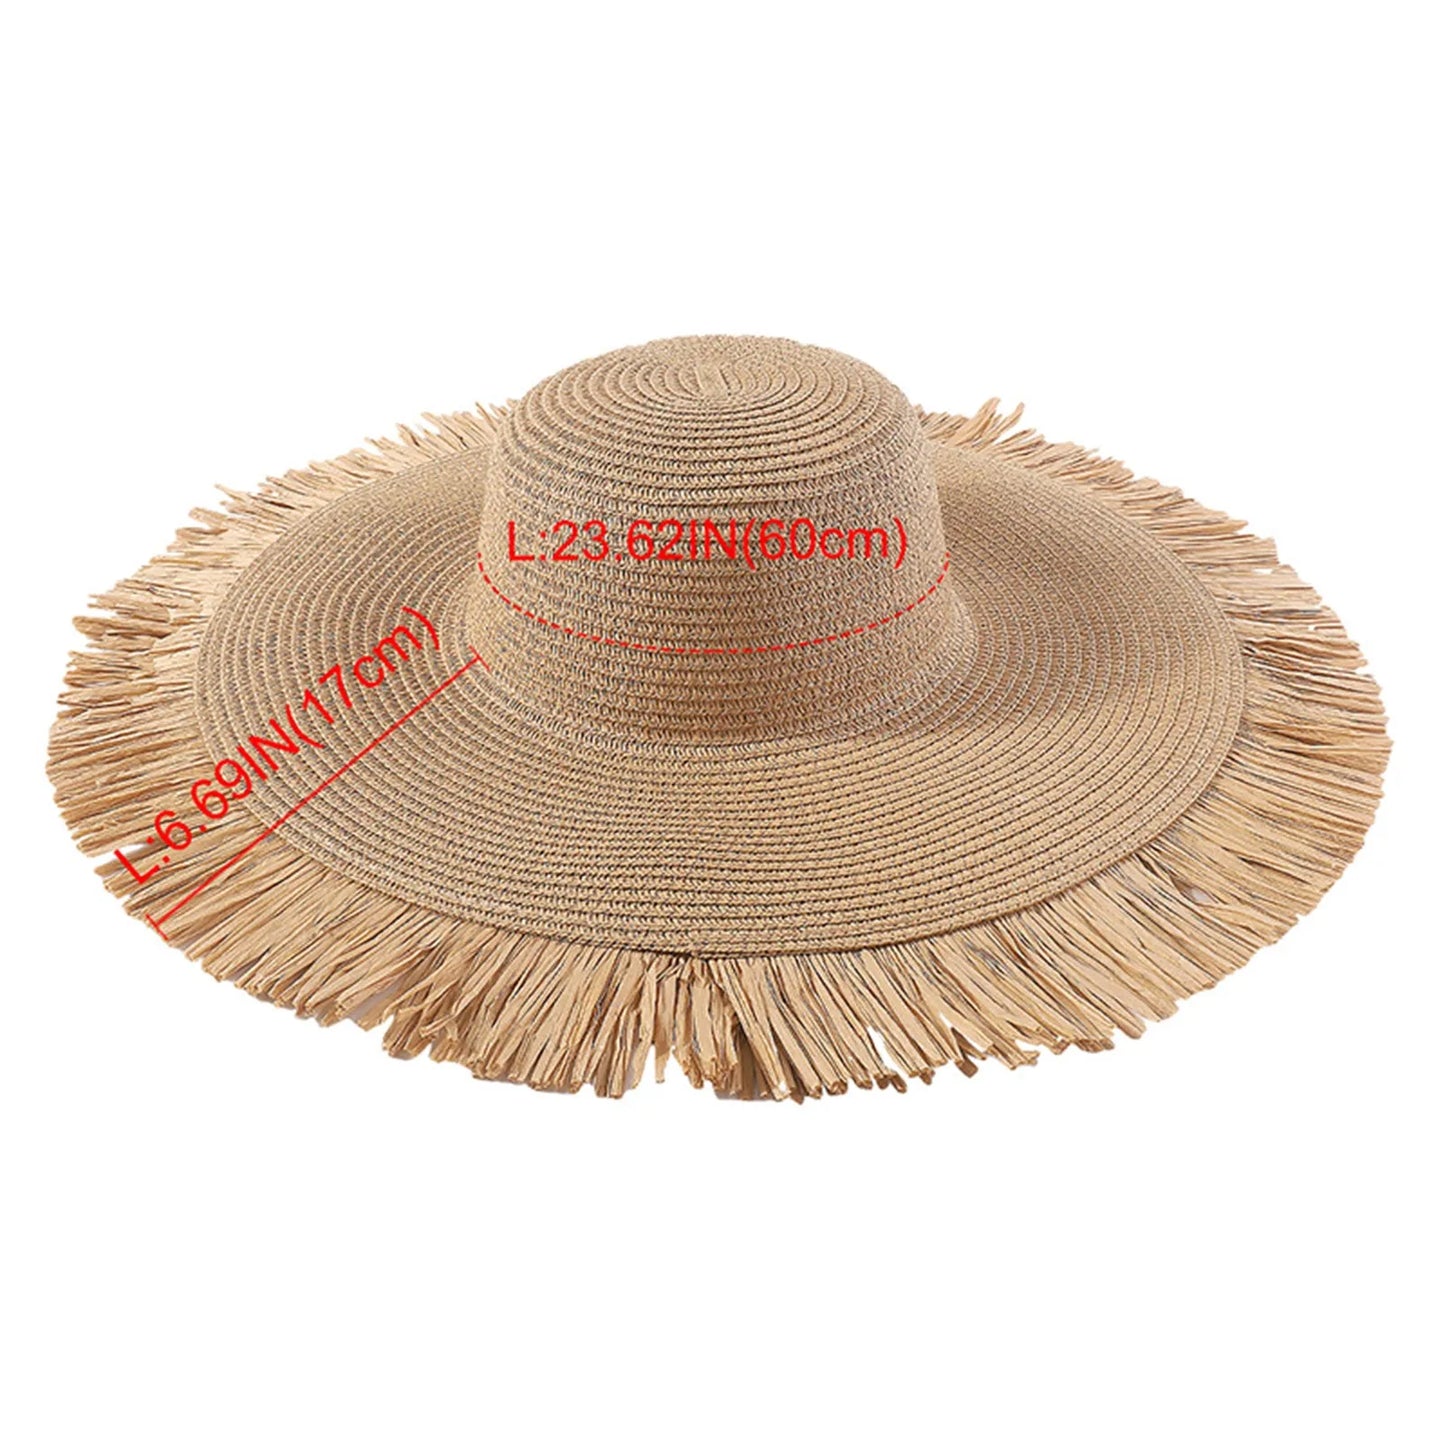 Moda damska bohemian letnie na świeżym powietrzu wielki brzeg słoneczny swobodny wakacje tkany hat hat słomek żeńska fatowa czapka f i e n d s hat